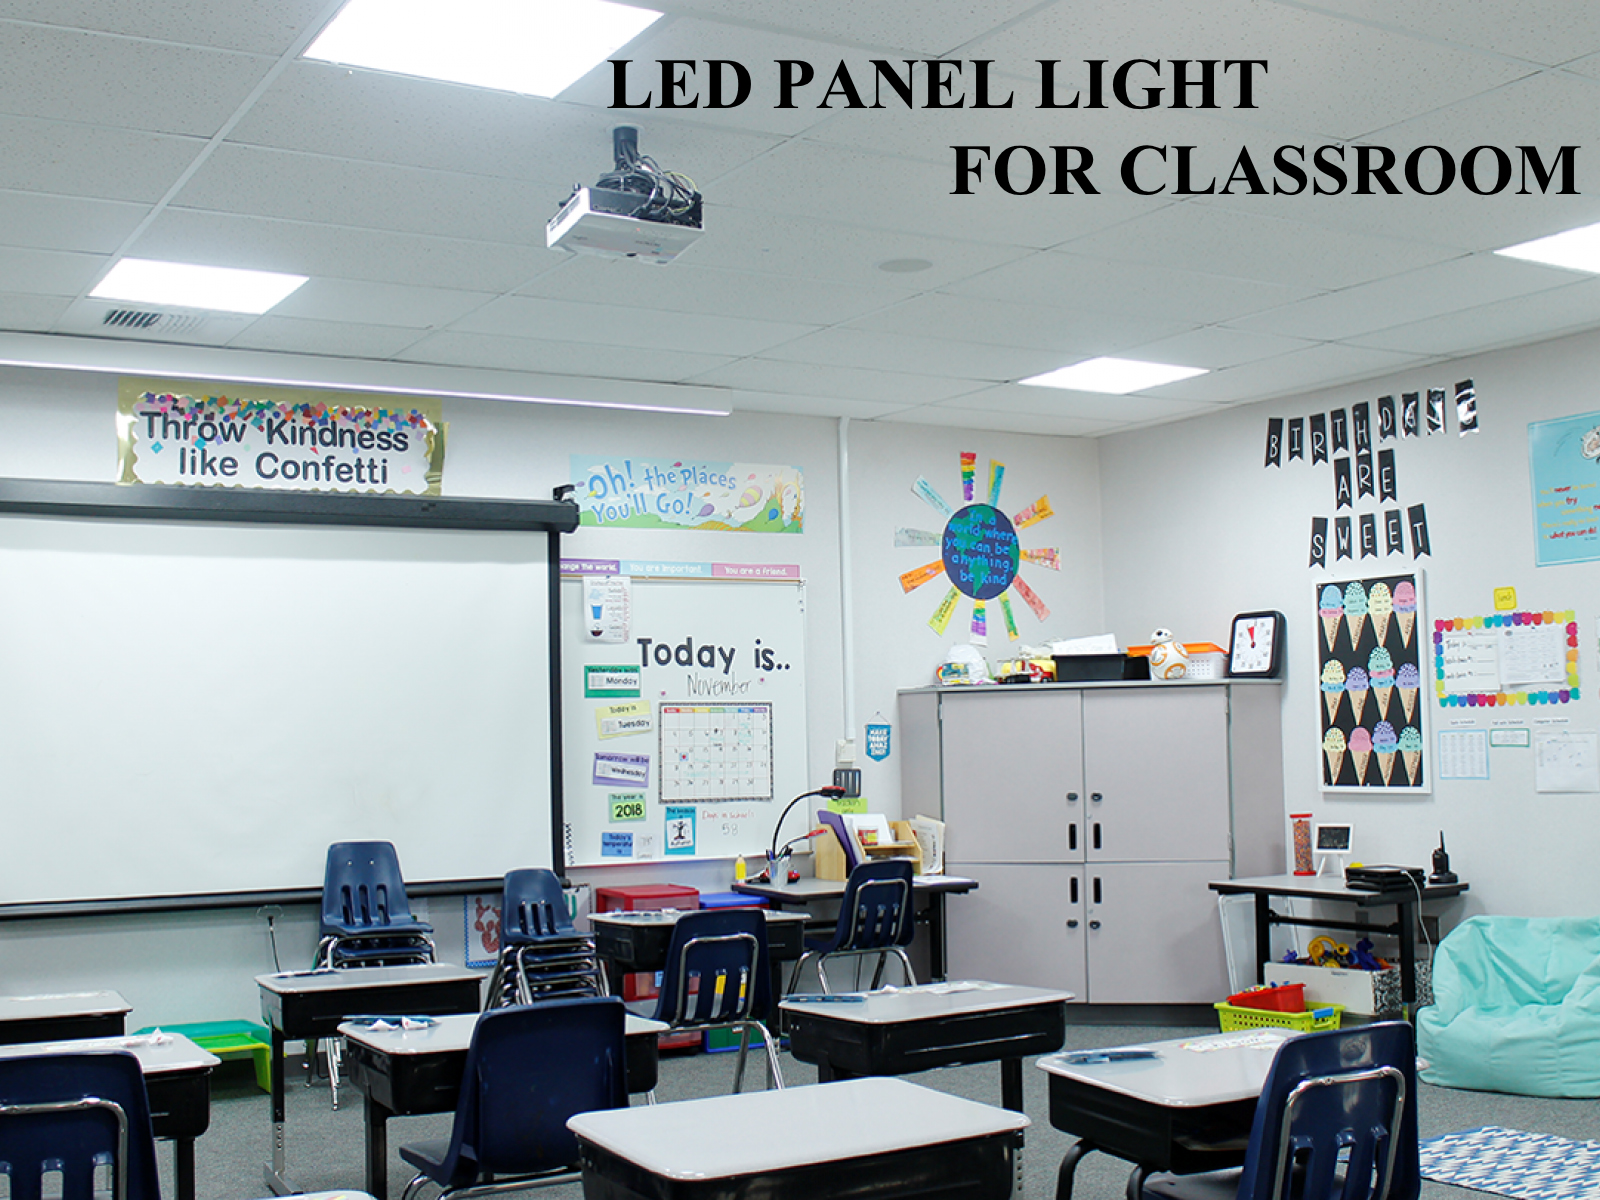 Anforderungen an Beleuchtung, Leistung, Farbtemperatur und Installationsspezifikationen von LED-Lampen für Klassenzimmer